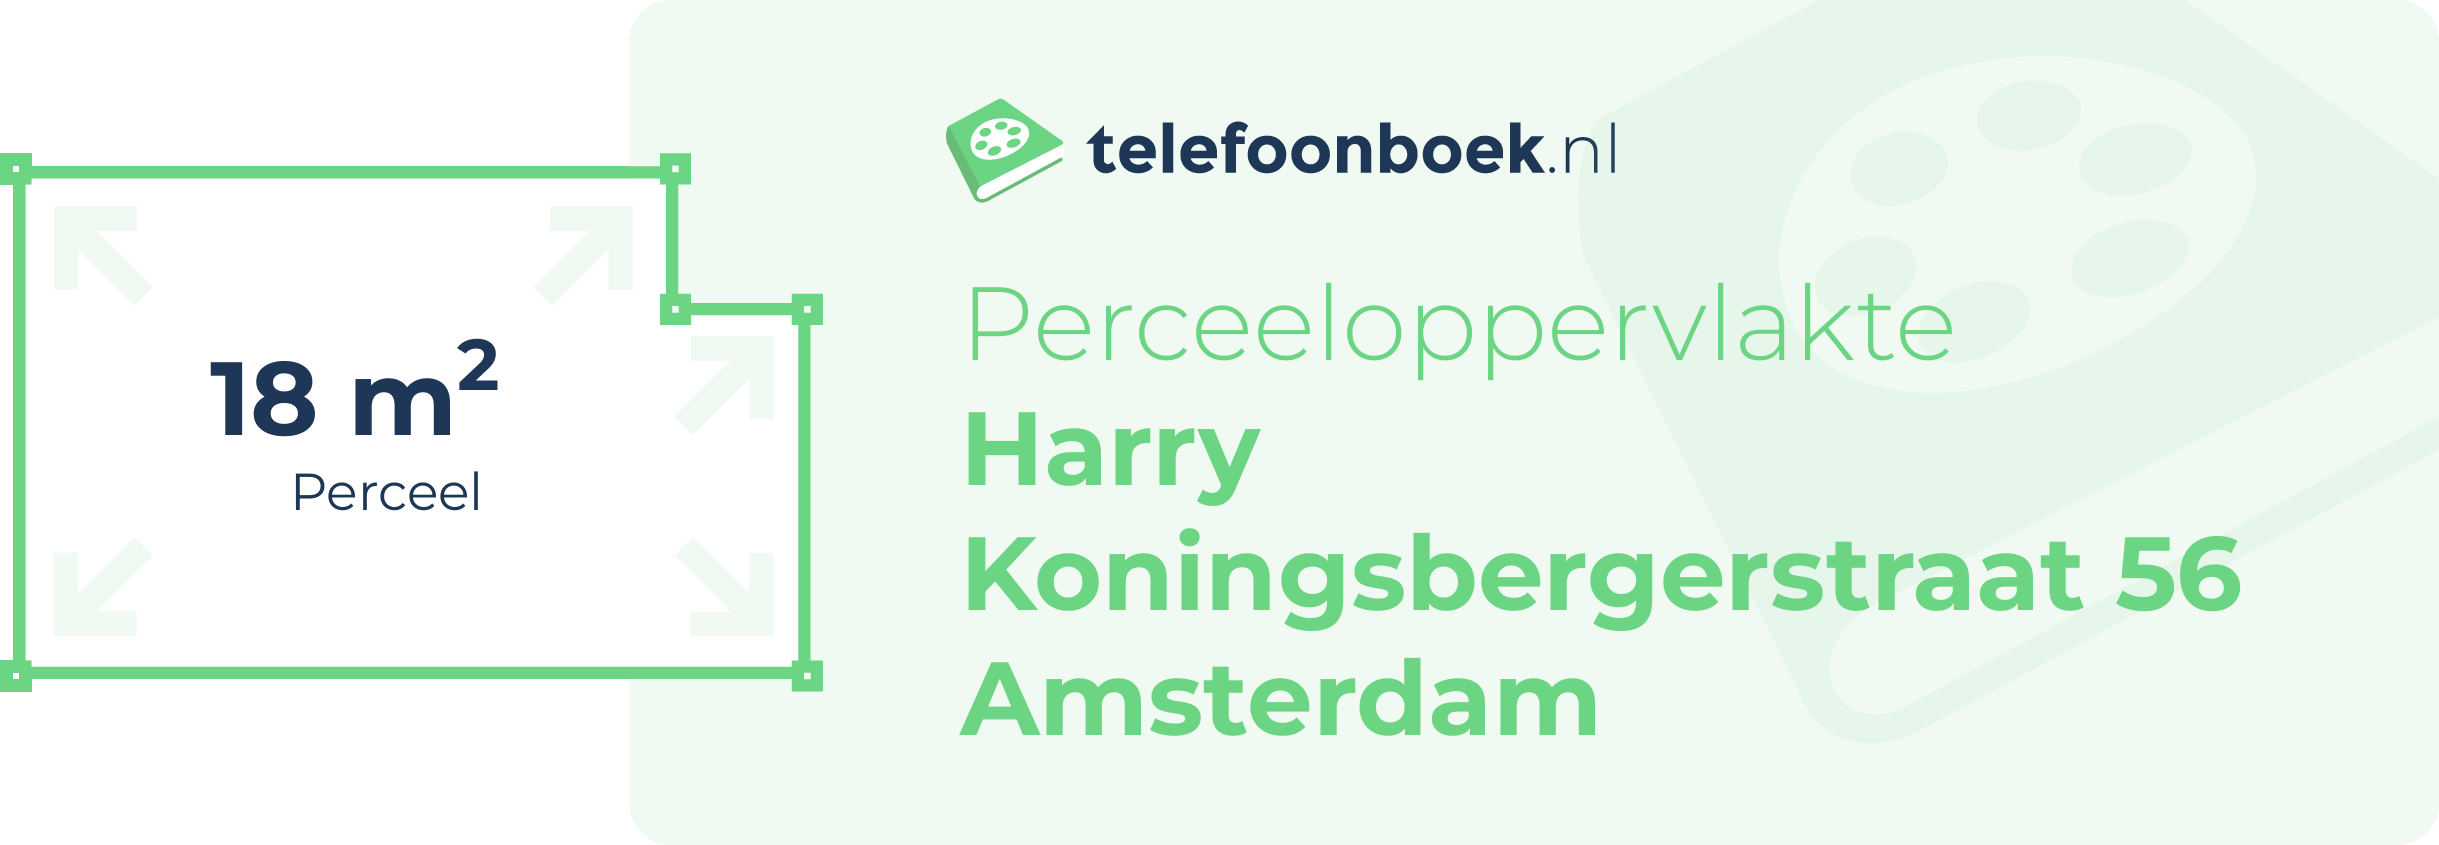 Perceeloppervlakte Harry Koningsbergerstraat 56 Amsterdam